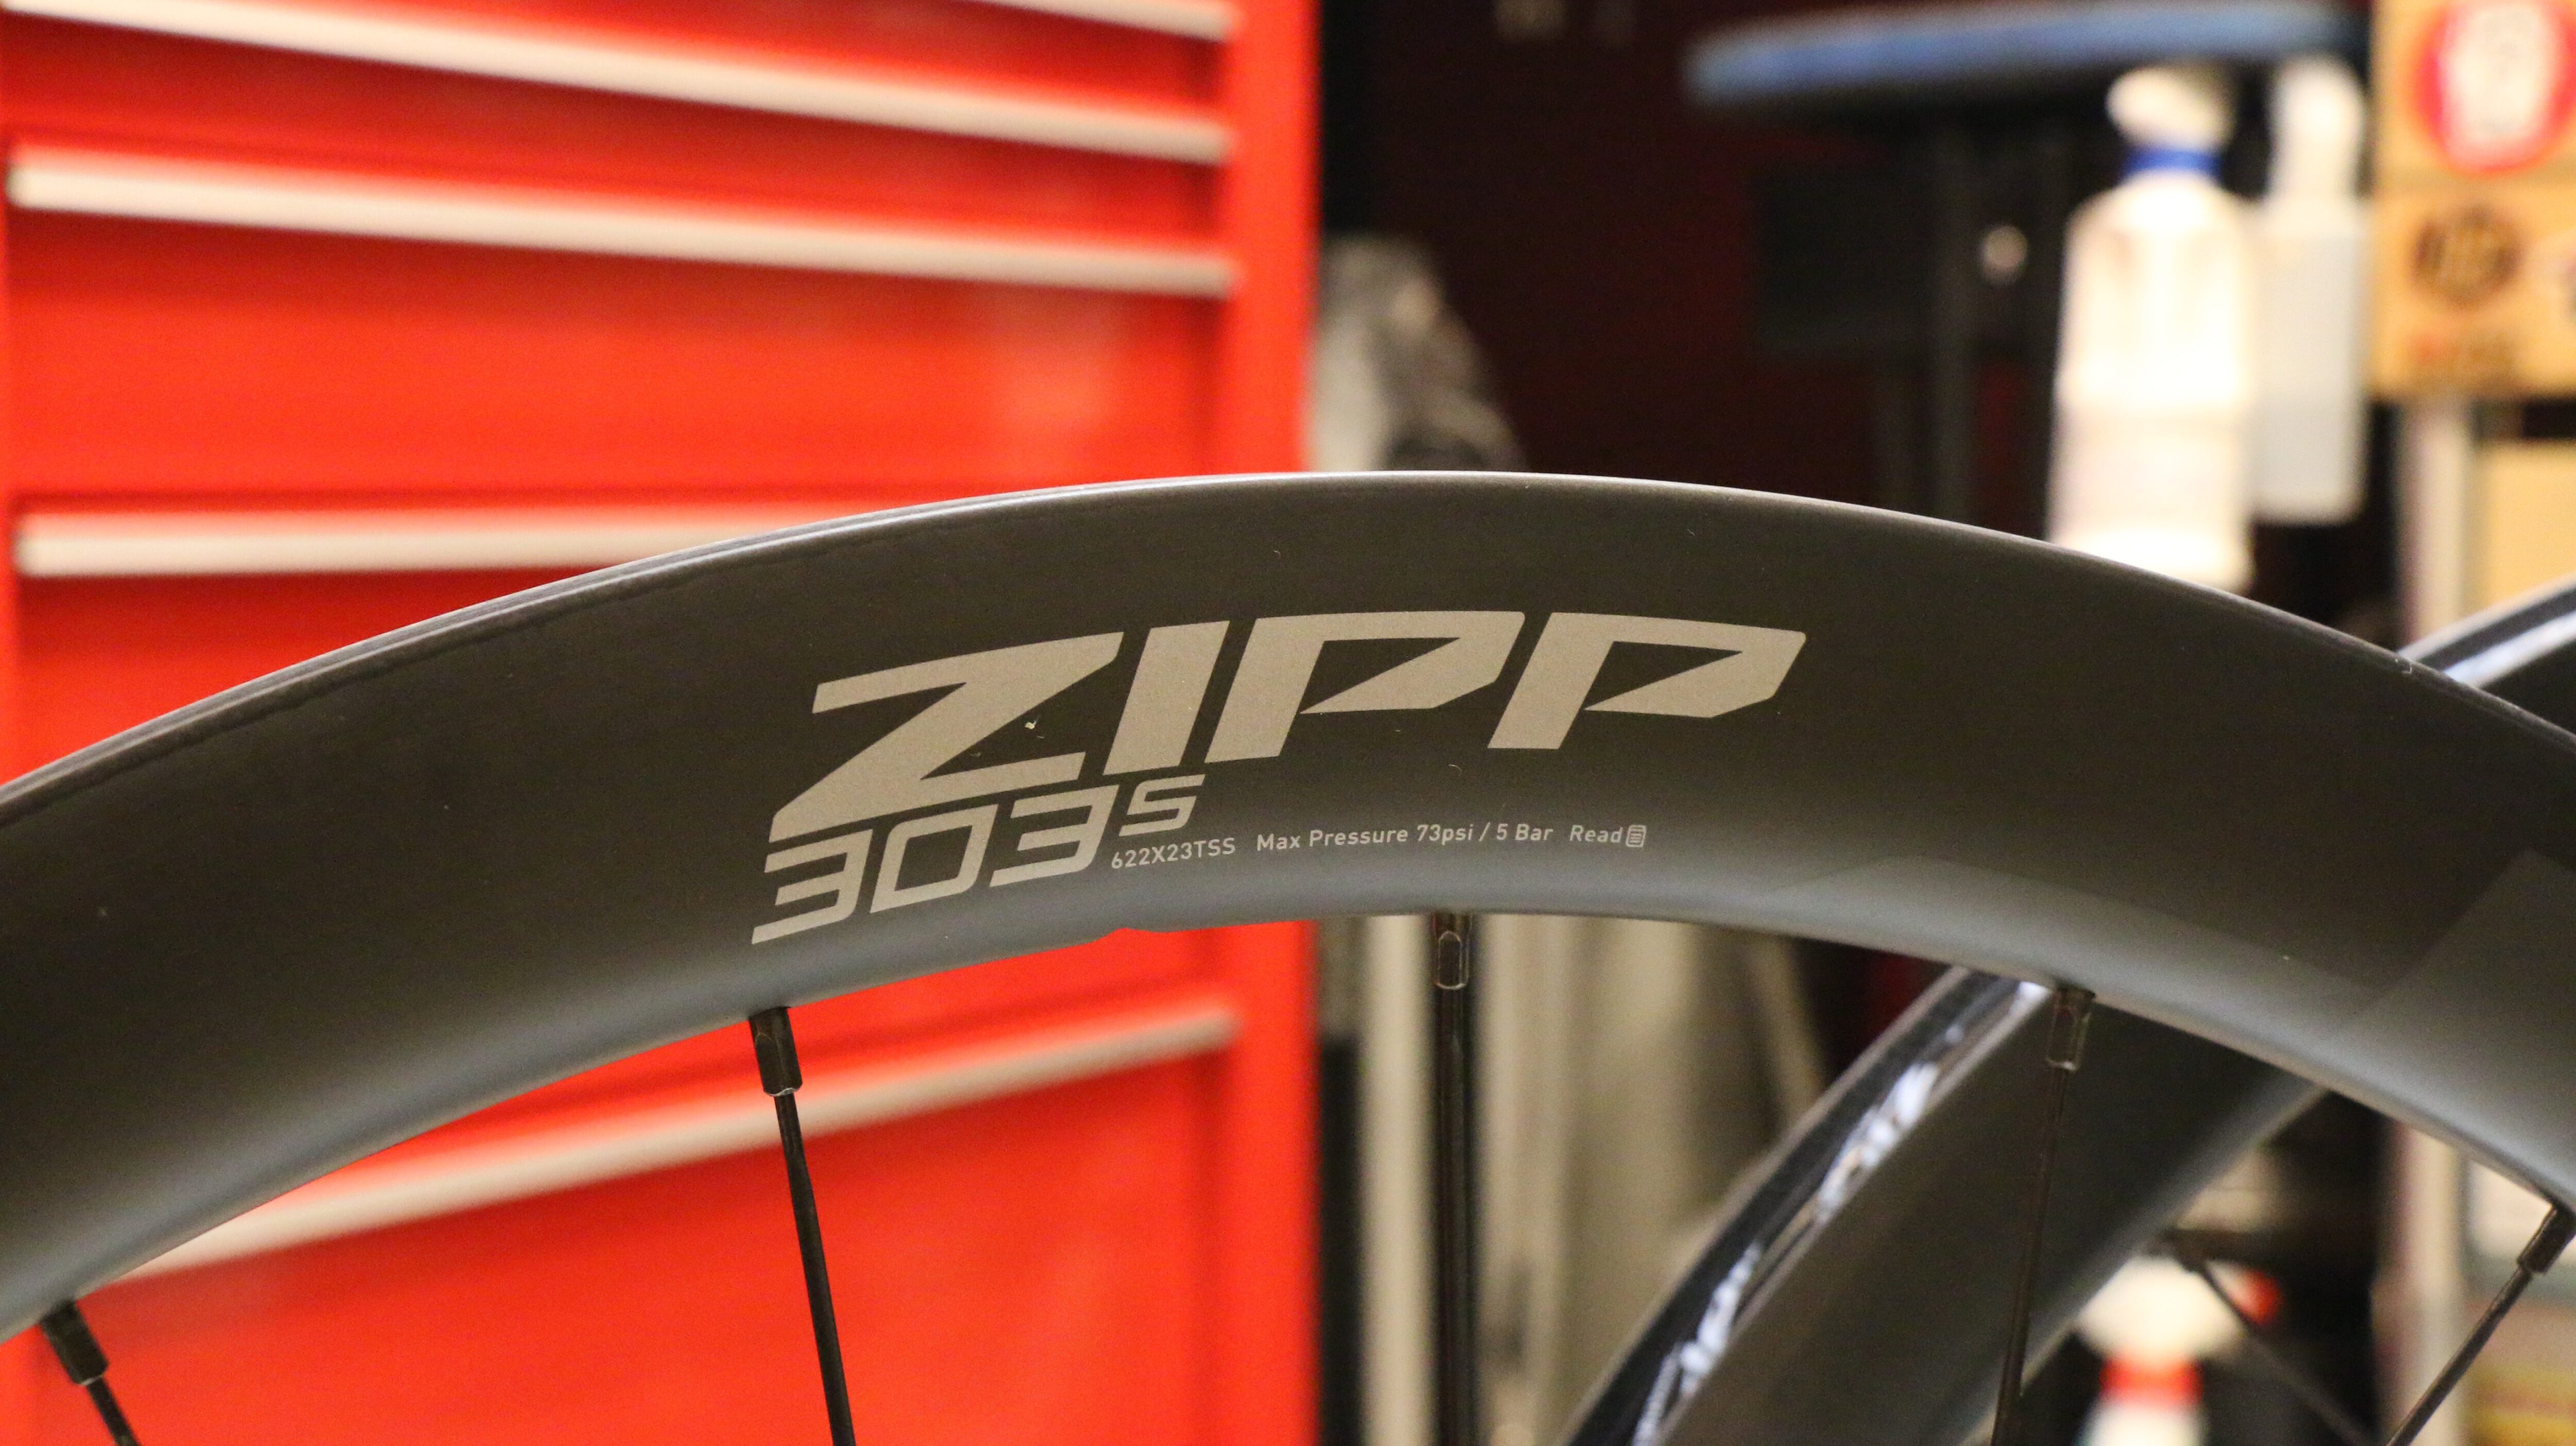 ディスクロードアップグレードに最適】ZIPP 303S | BICYCLE STUDIO R 